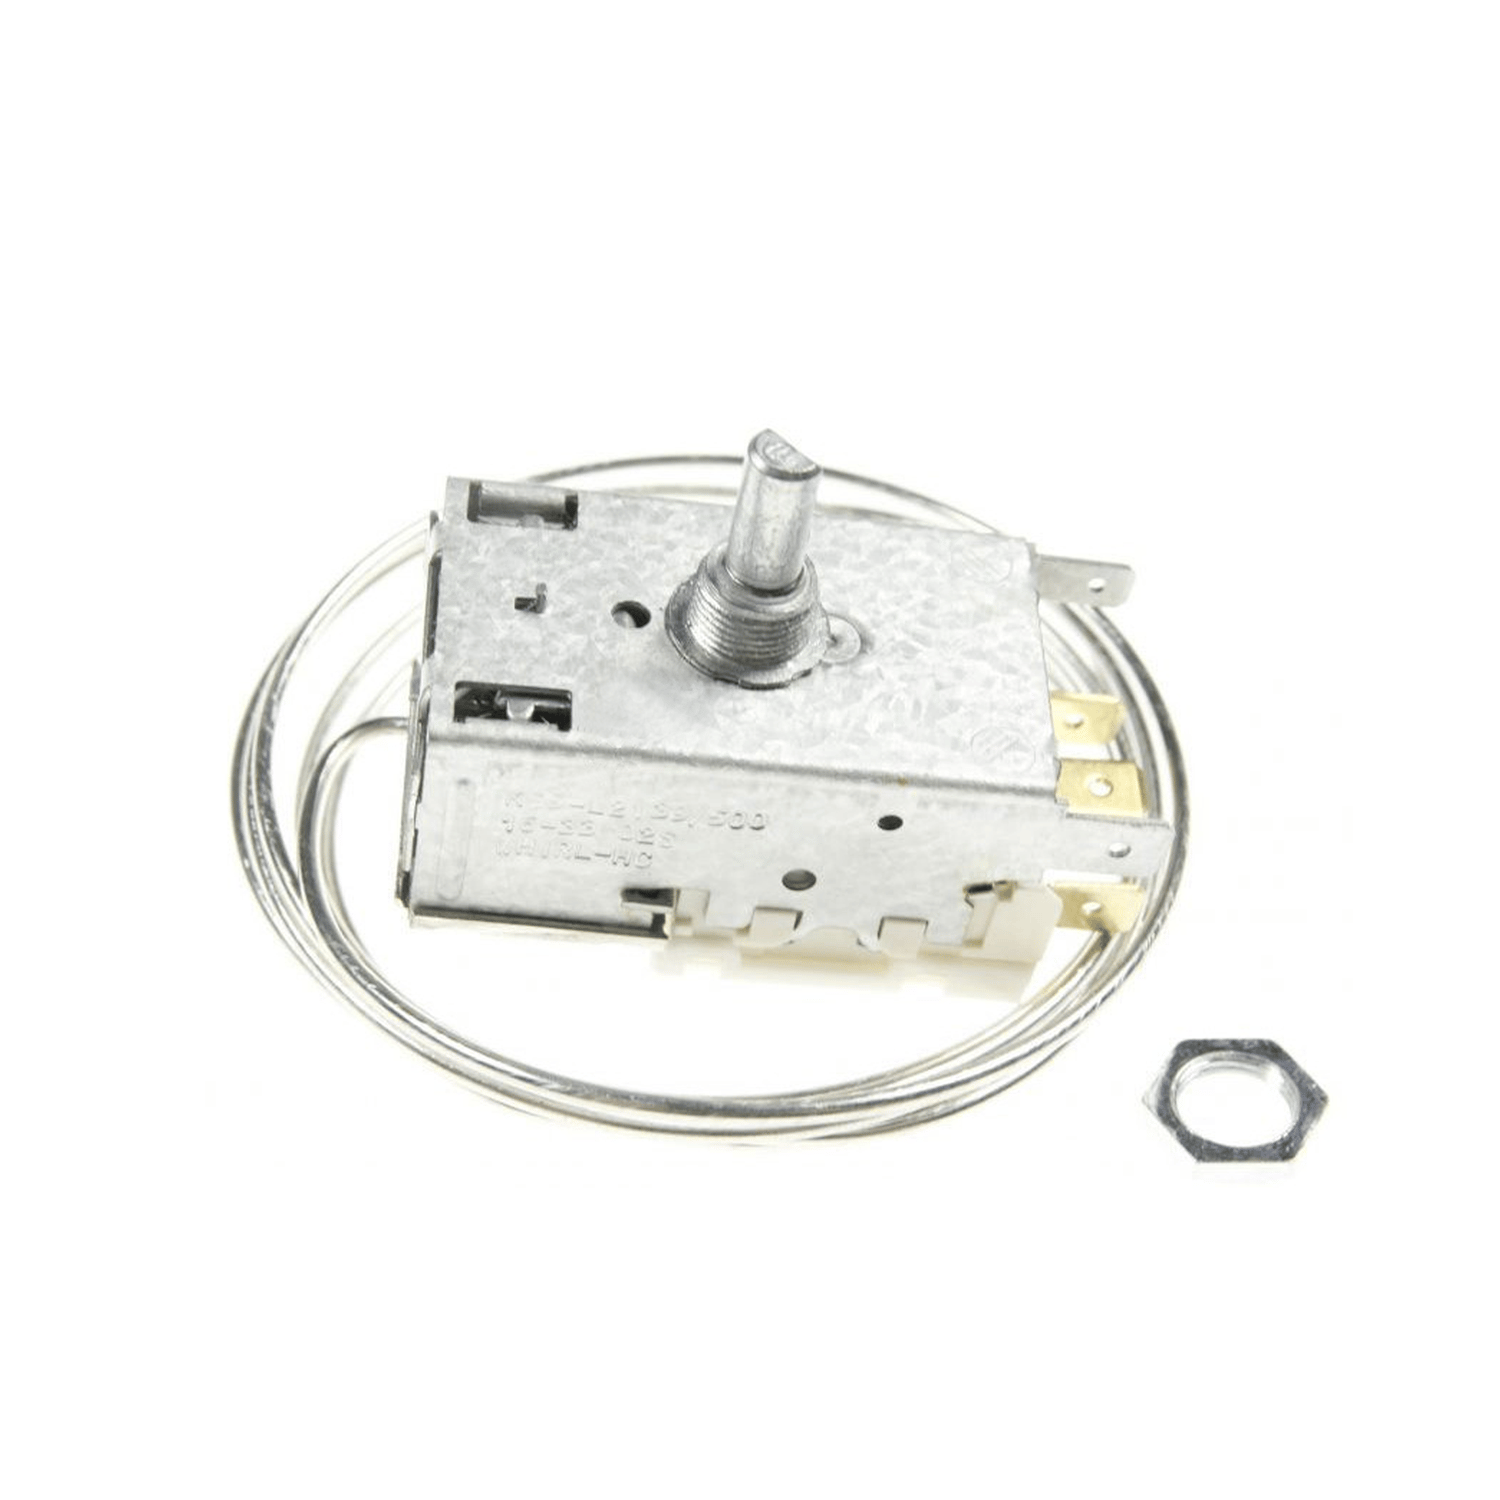 Thermostaat RANCO K59-L2139500 voor koelkast Robertshaw, L 1530 mm, 4,8 mm Amp